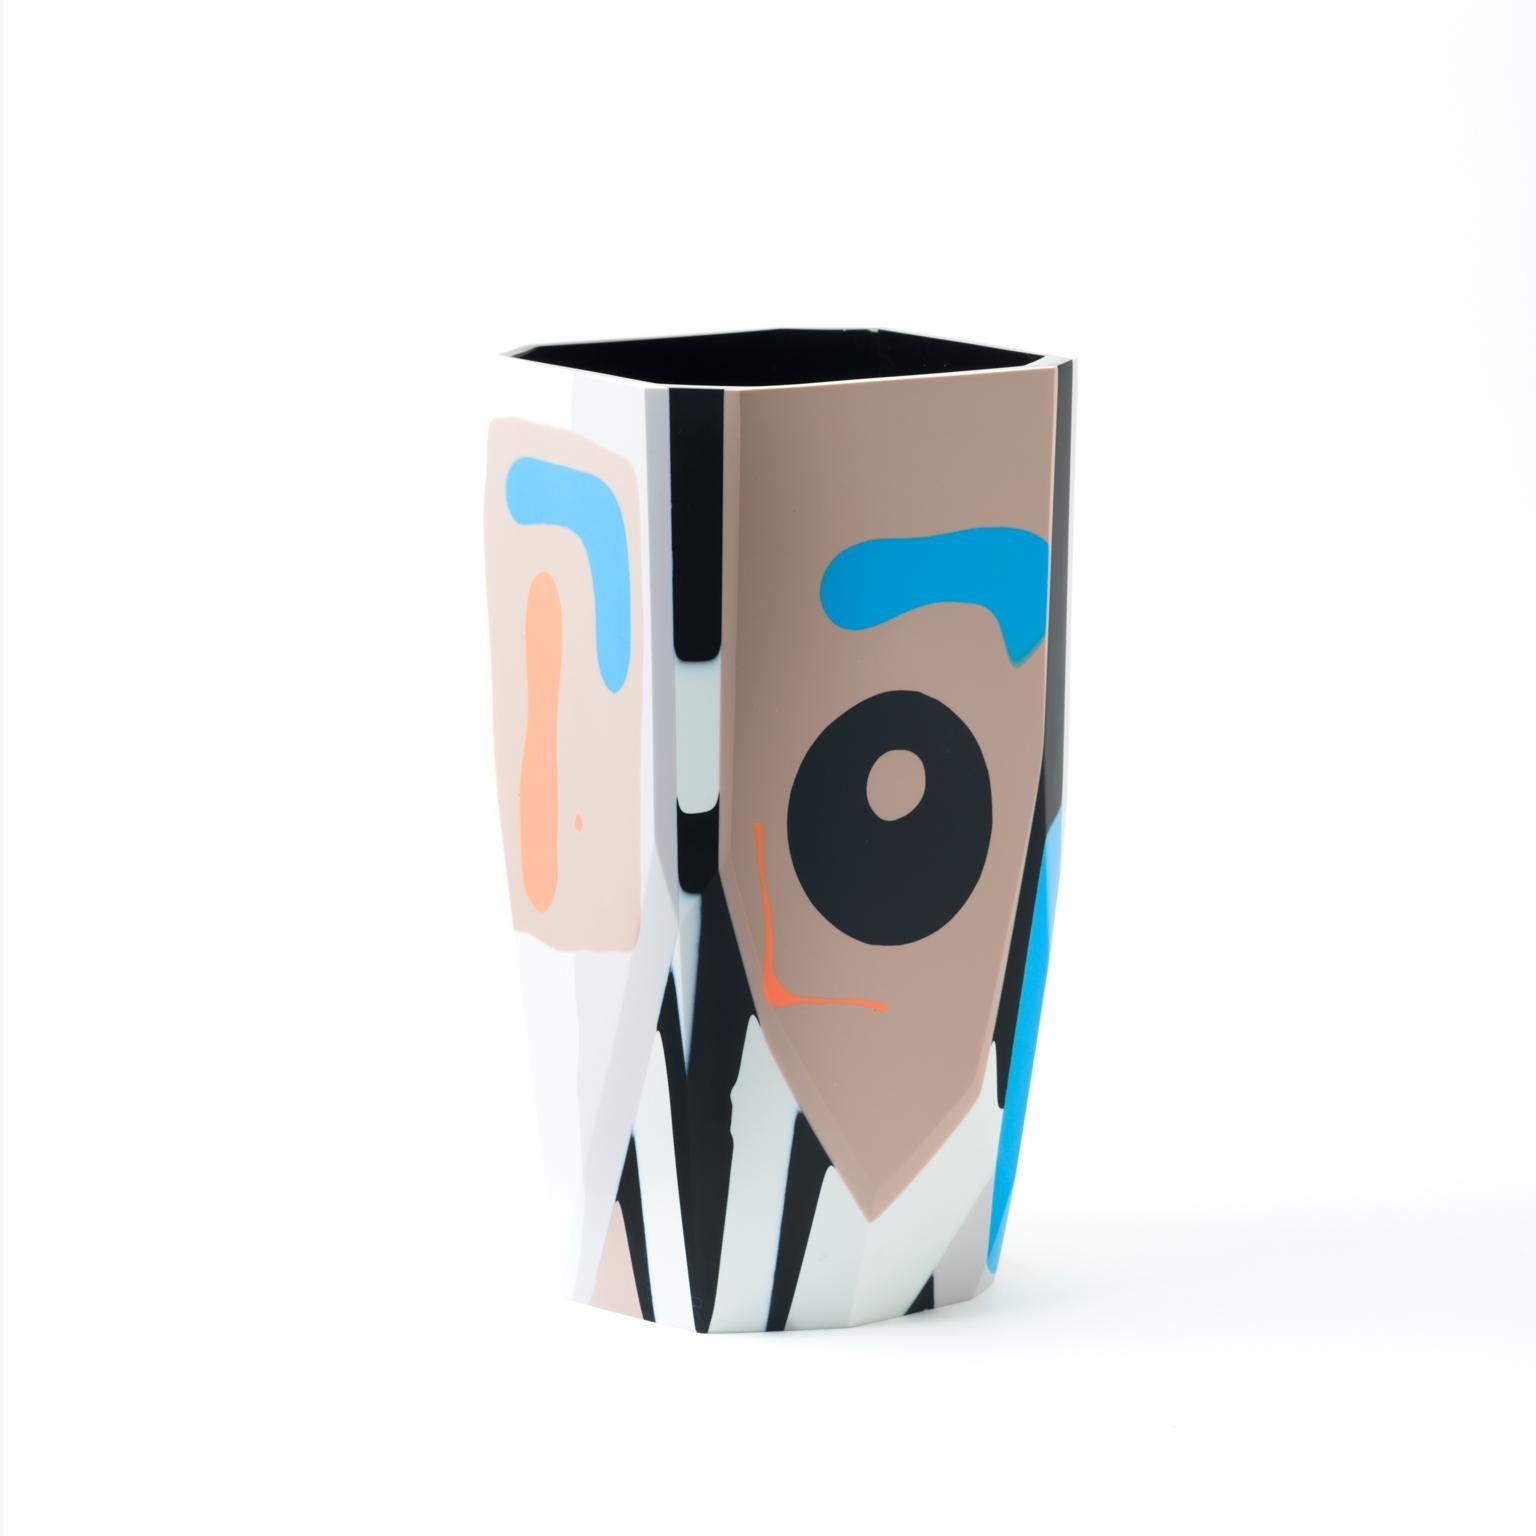 Le vase Kalahari, graphique et audacieux, est une nouvelle addition à notre collection de récipients en résine Black Magic, inspirée par le concept de révéler ce qui a été caché à la vue, mais qui reste toujours présent.

En regardant vers le